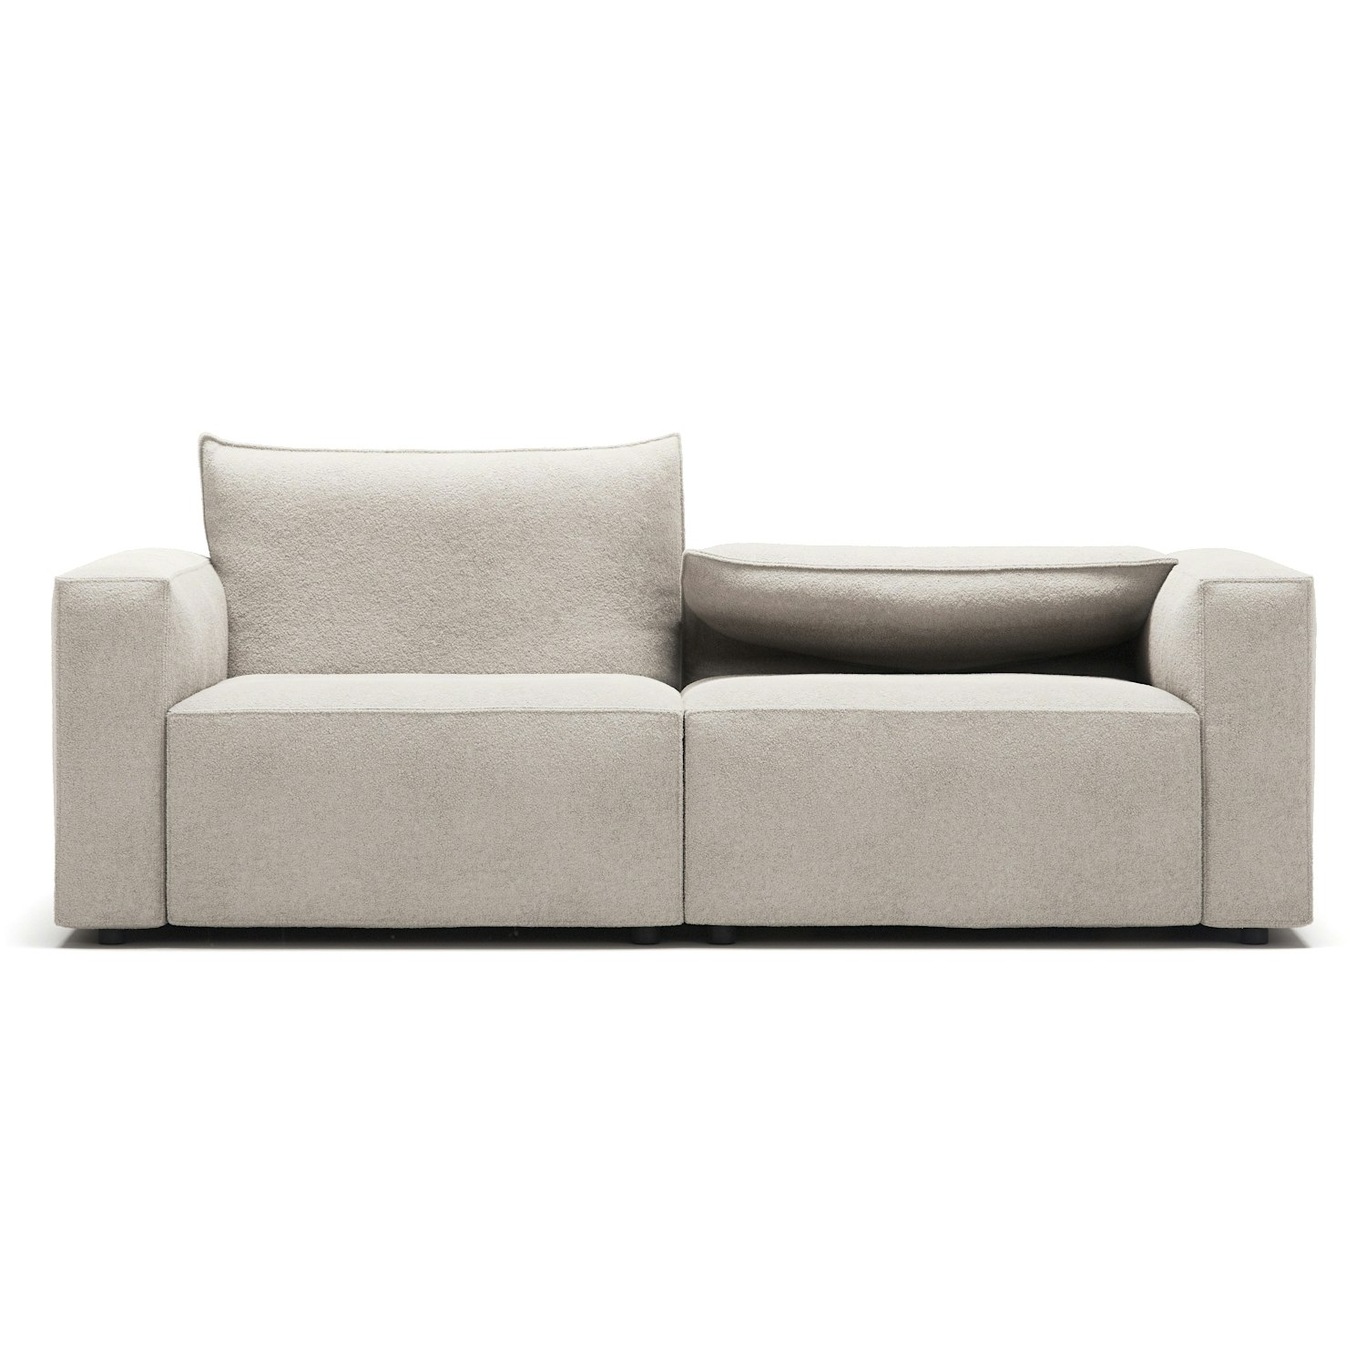 Moore 2-Seater Sofa, Plush Beige